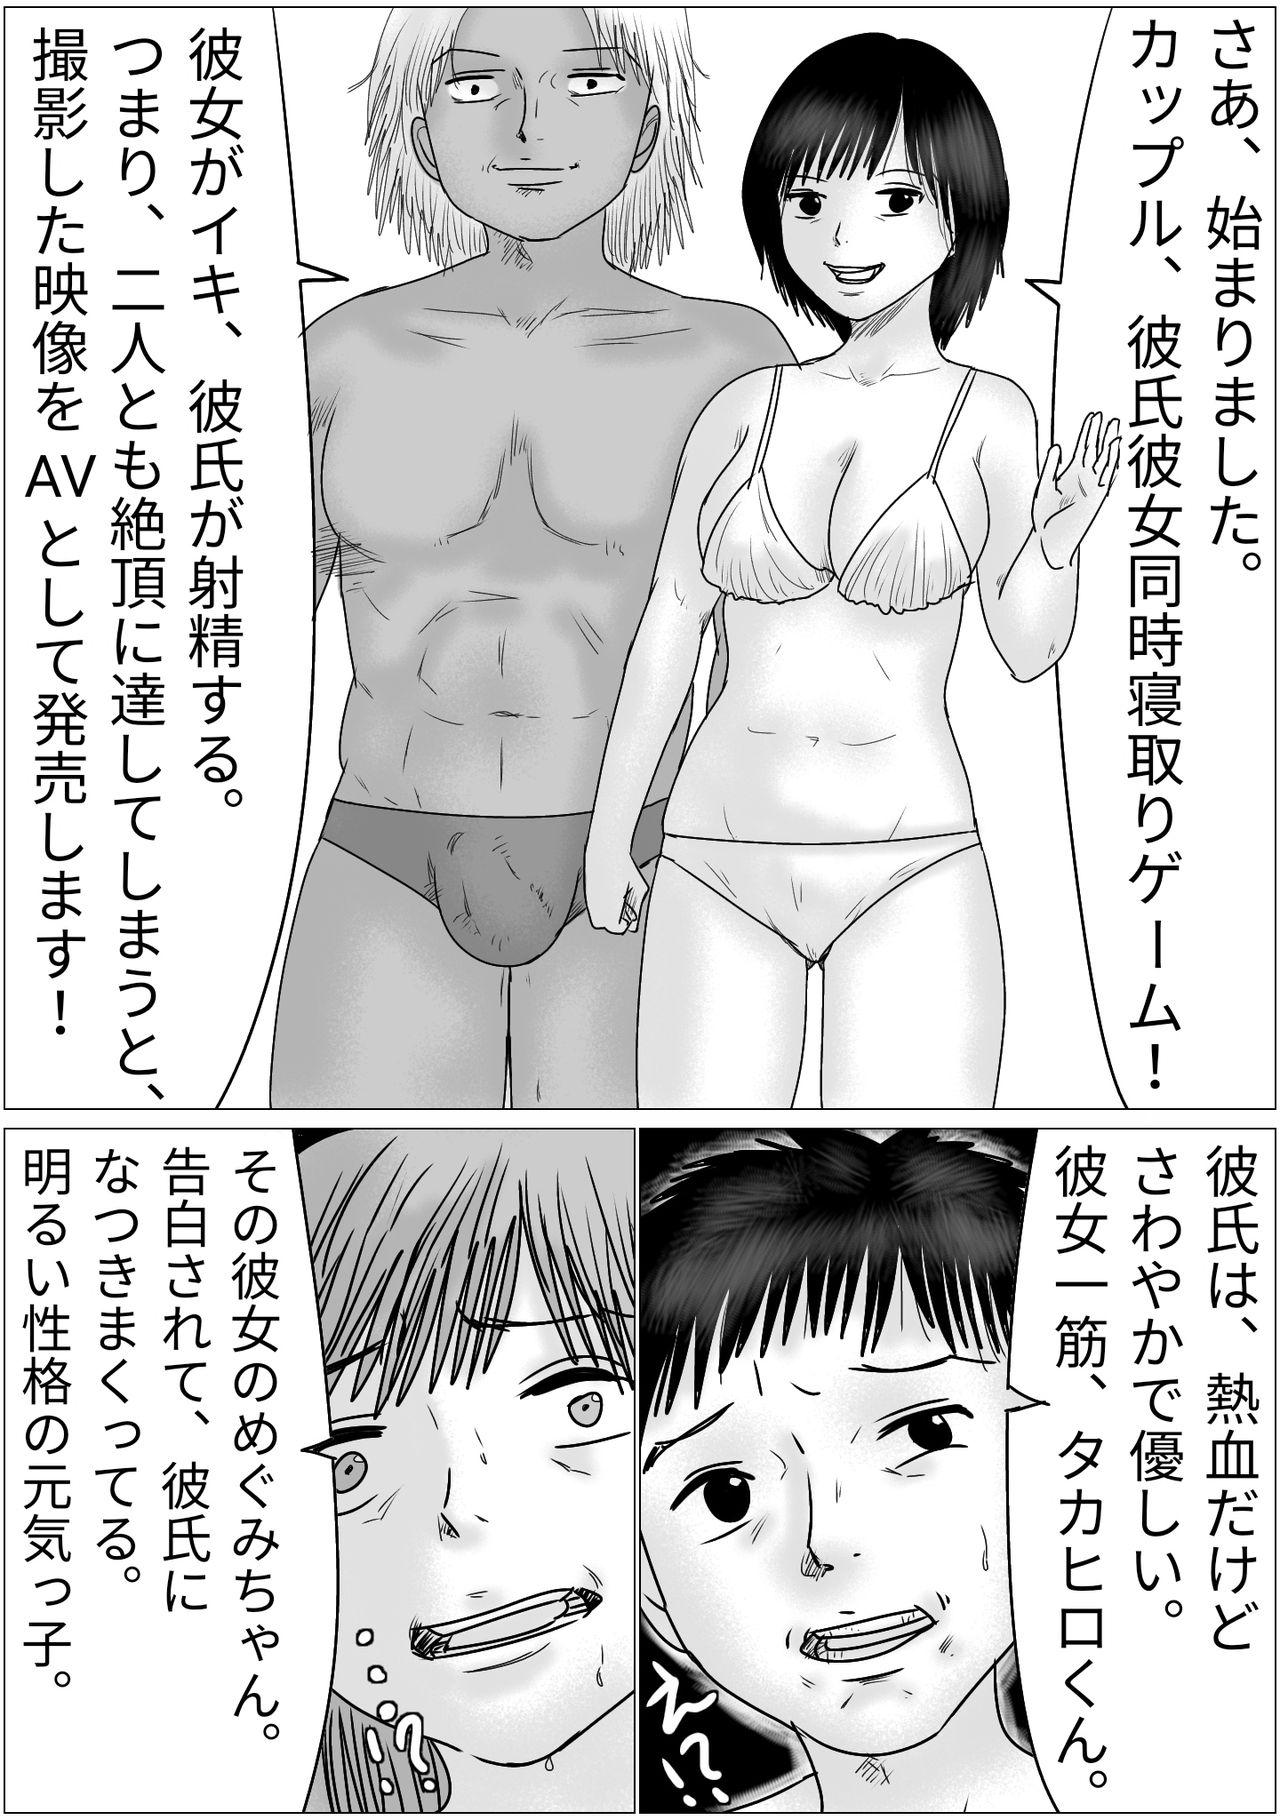 Cojiendo Boyfriend and girlfriend simultaneous cuckold game - Original Oral Porn - Page 5